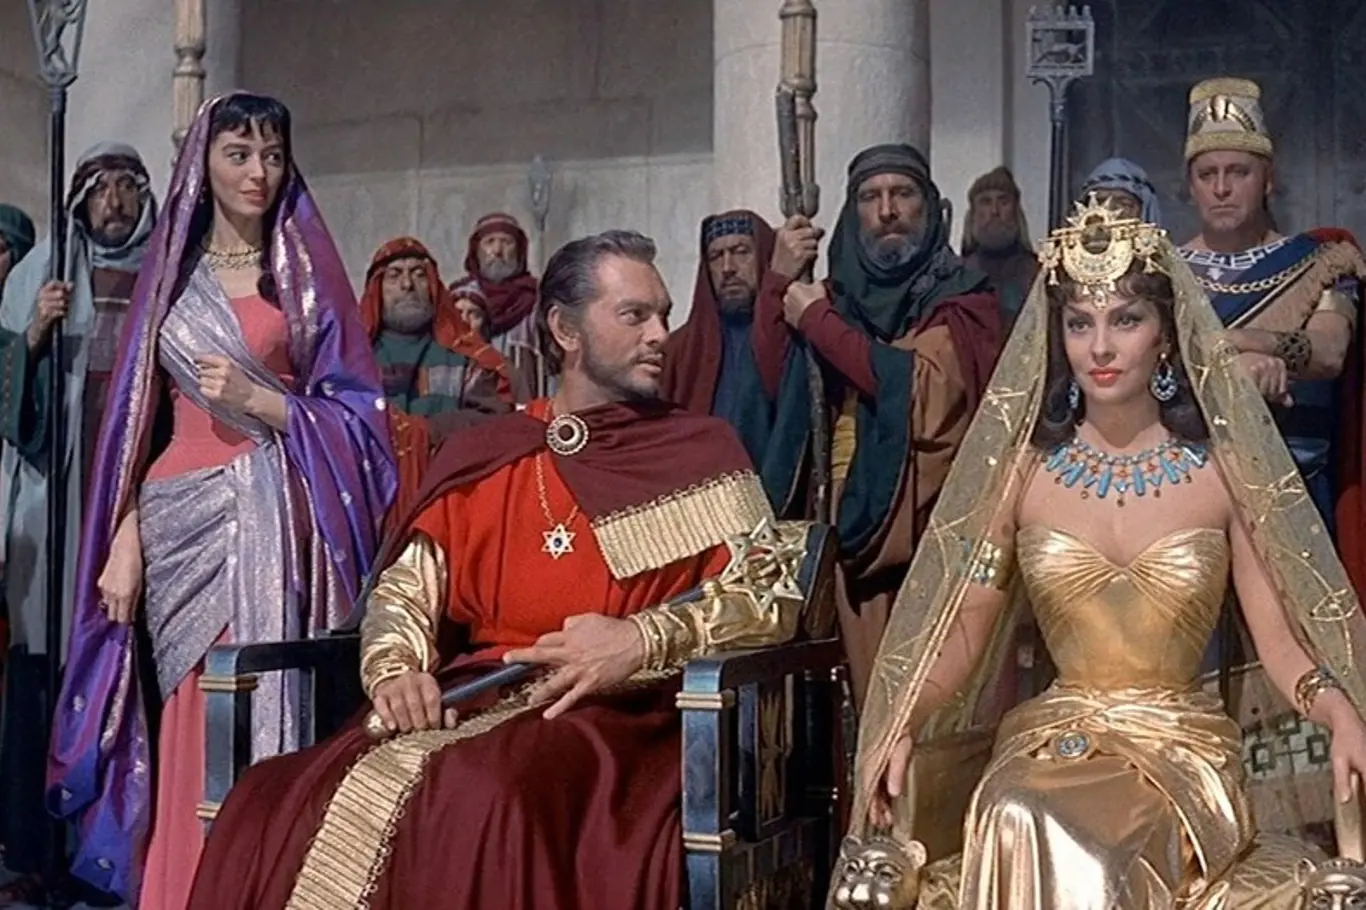 Gina Lollobrigida jako královna ze Sáby, Yul Brynner jako Šalamoun, film Šalamoun a královna ze Sáby (1959), Režie: King Vidor